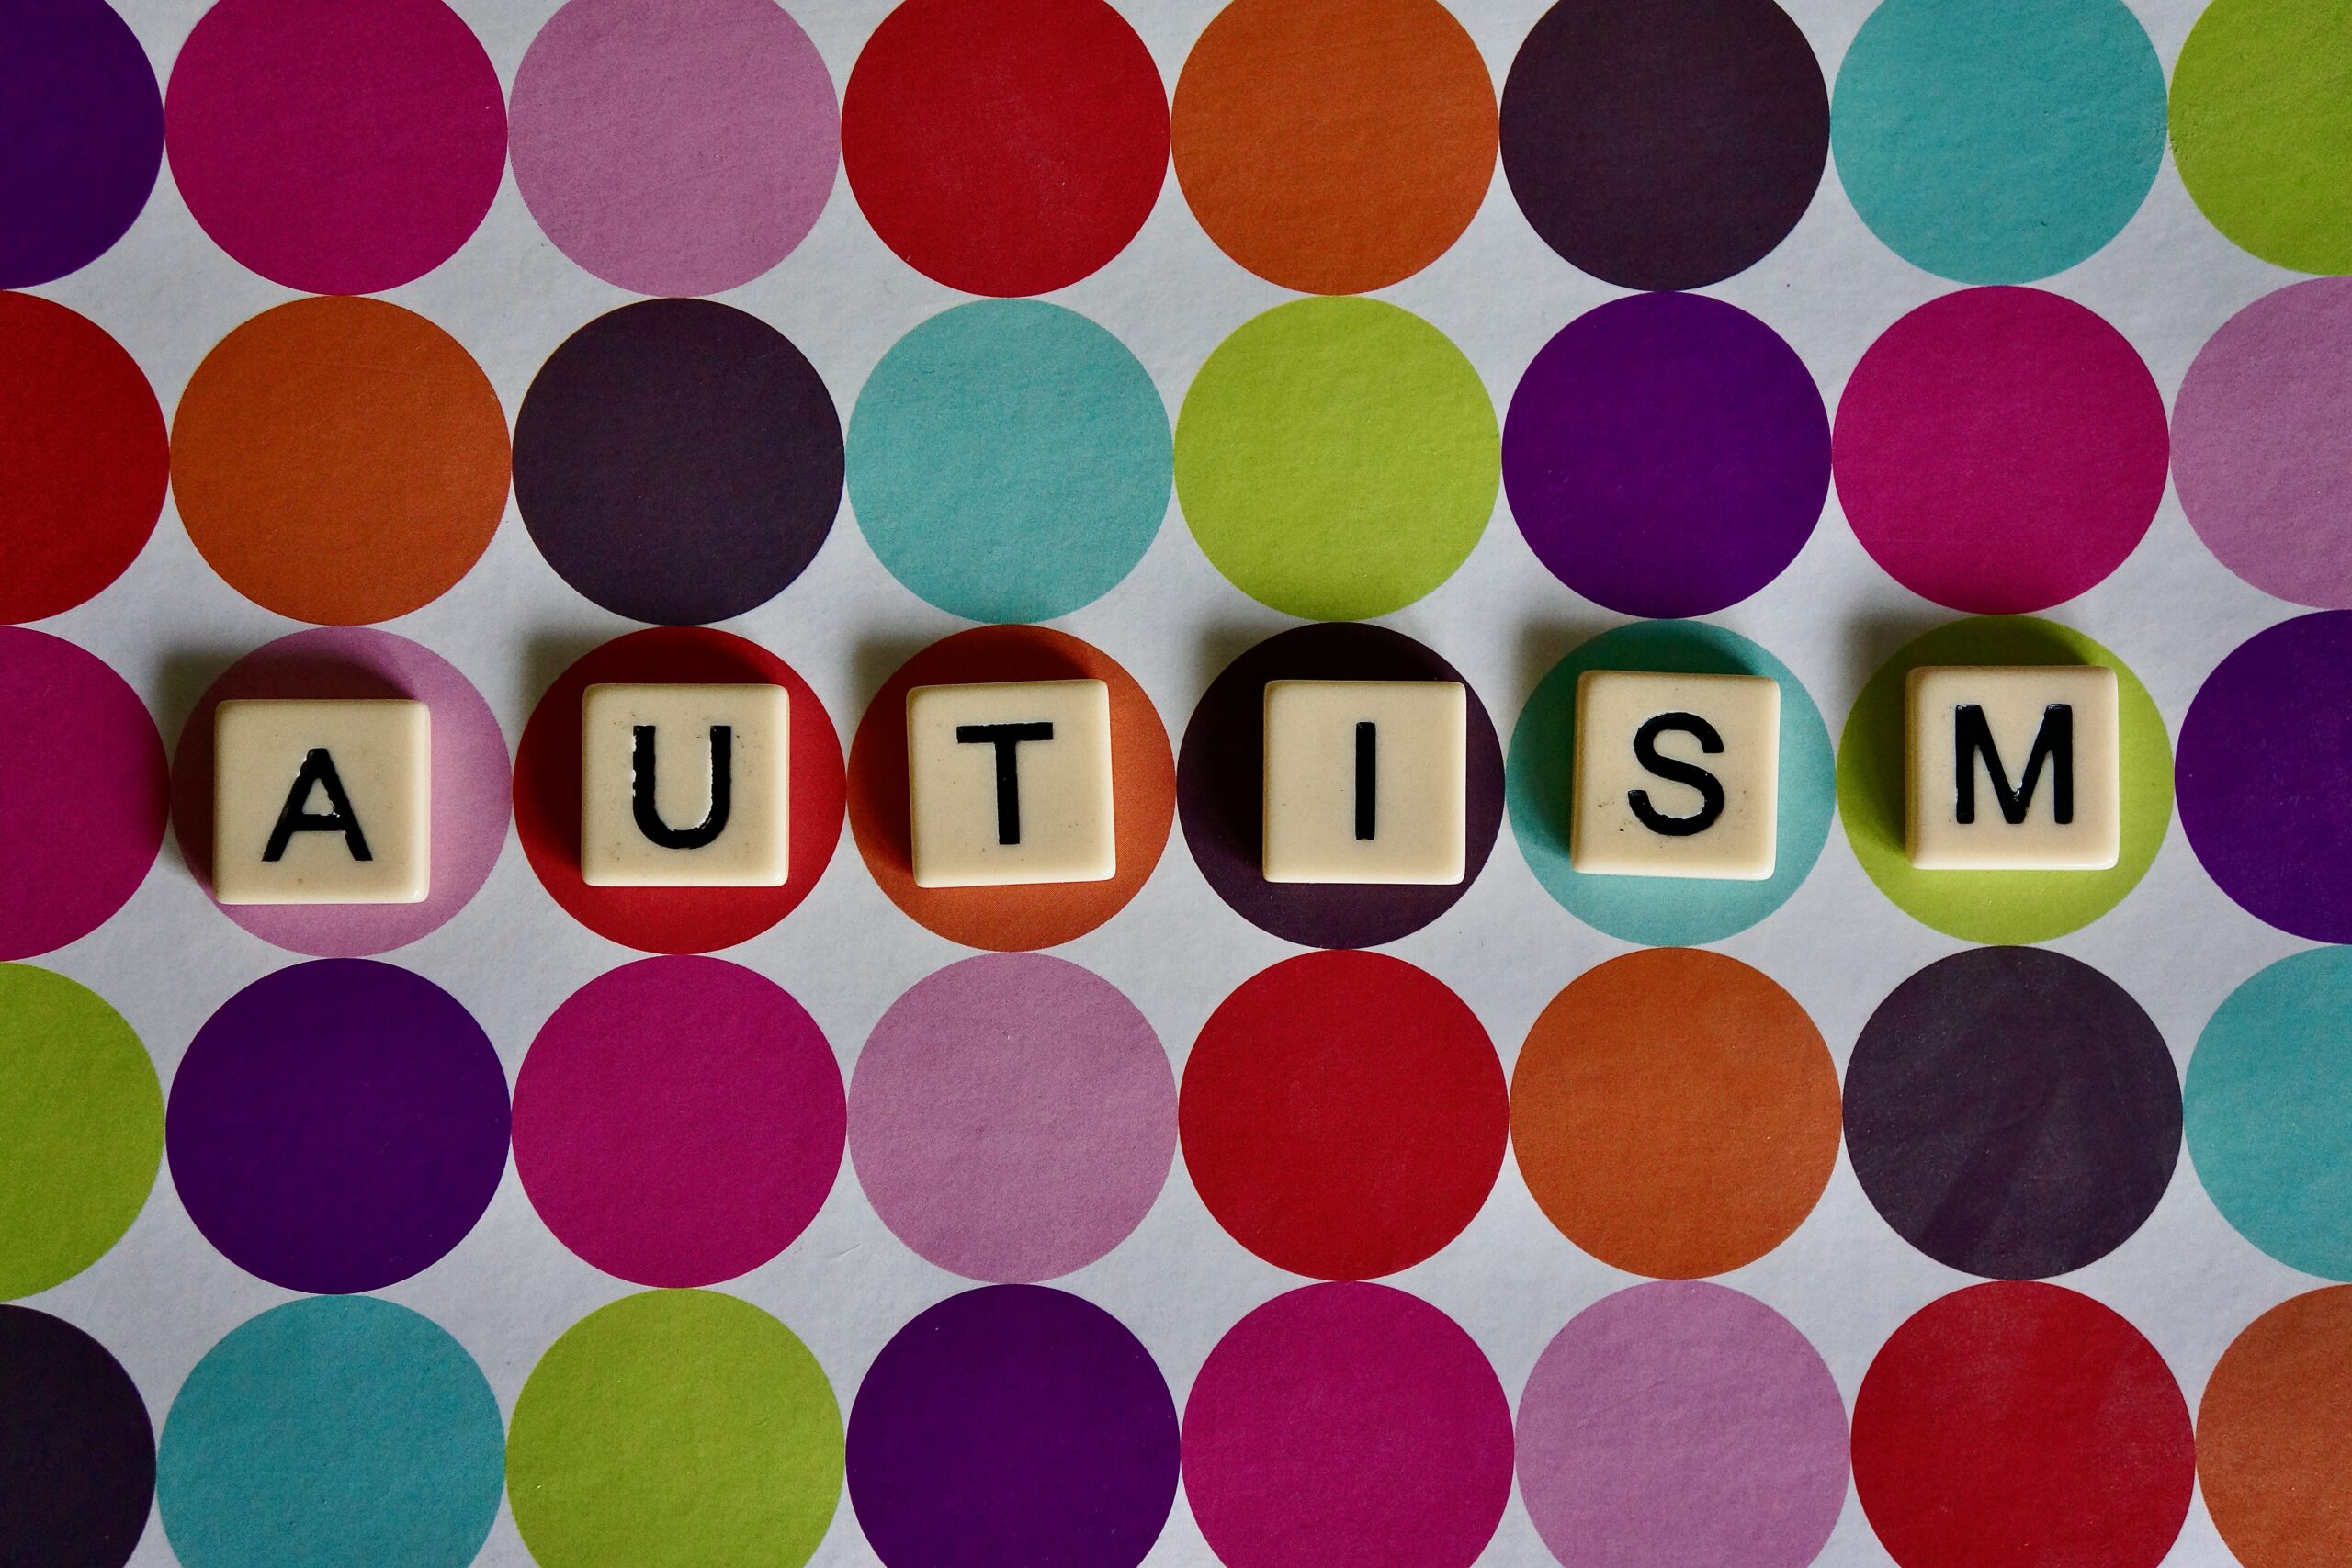 Auf einem grauen Hintergrund liegen Kreise in verschiednen Farben. In Scrabble-Buchstaben steht dort das Wort Autism